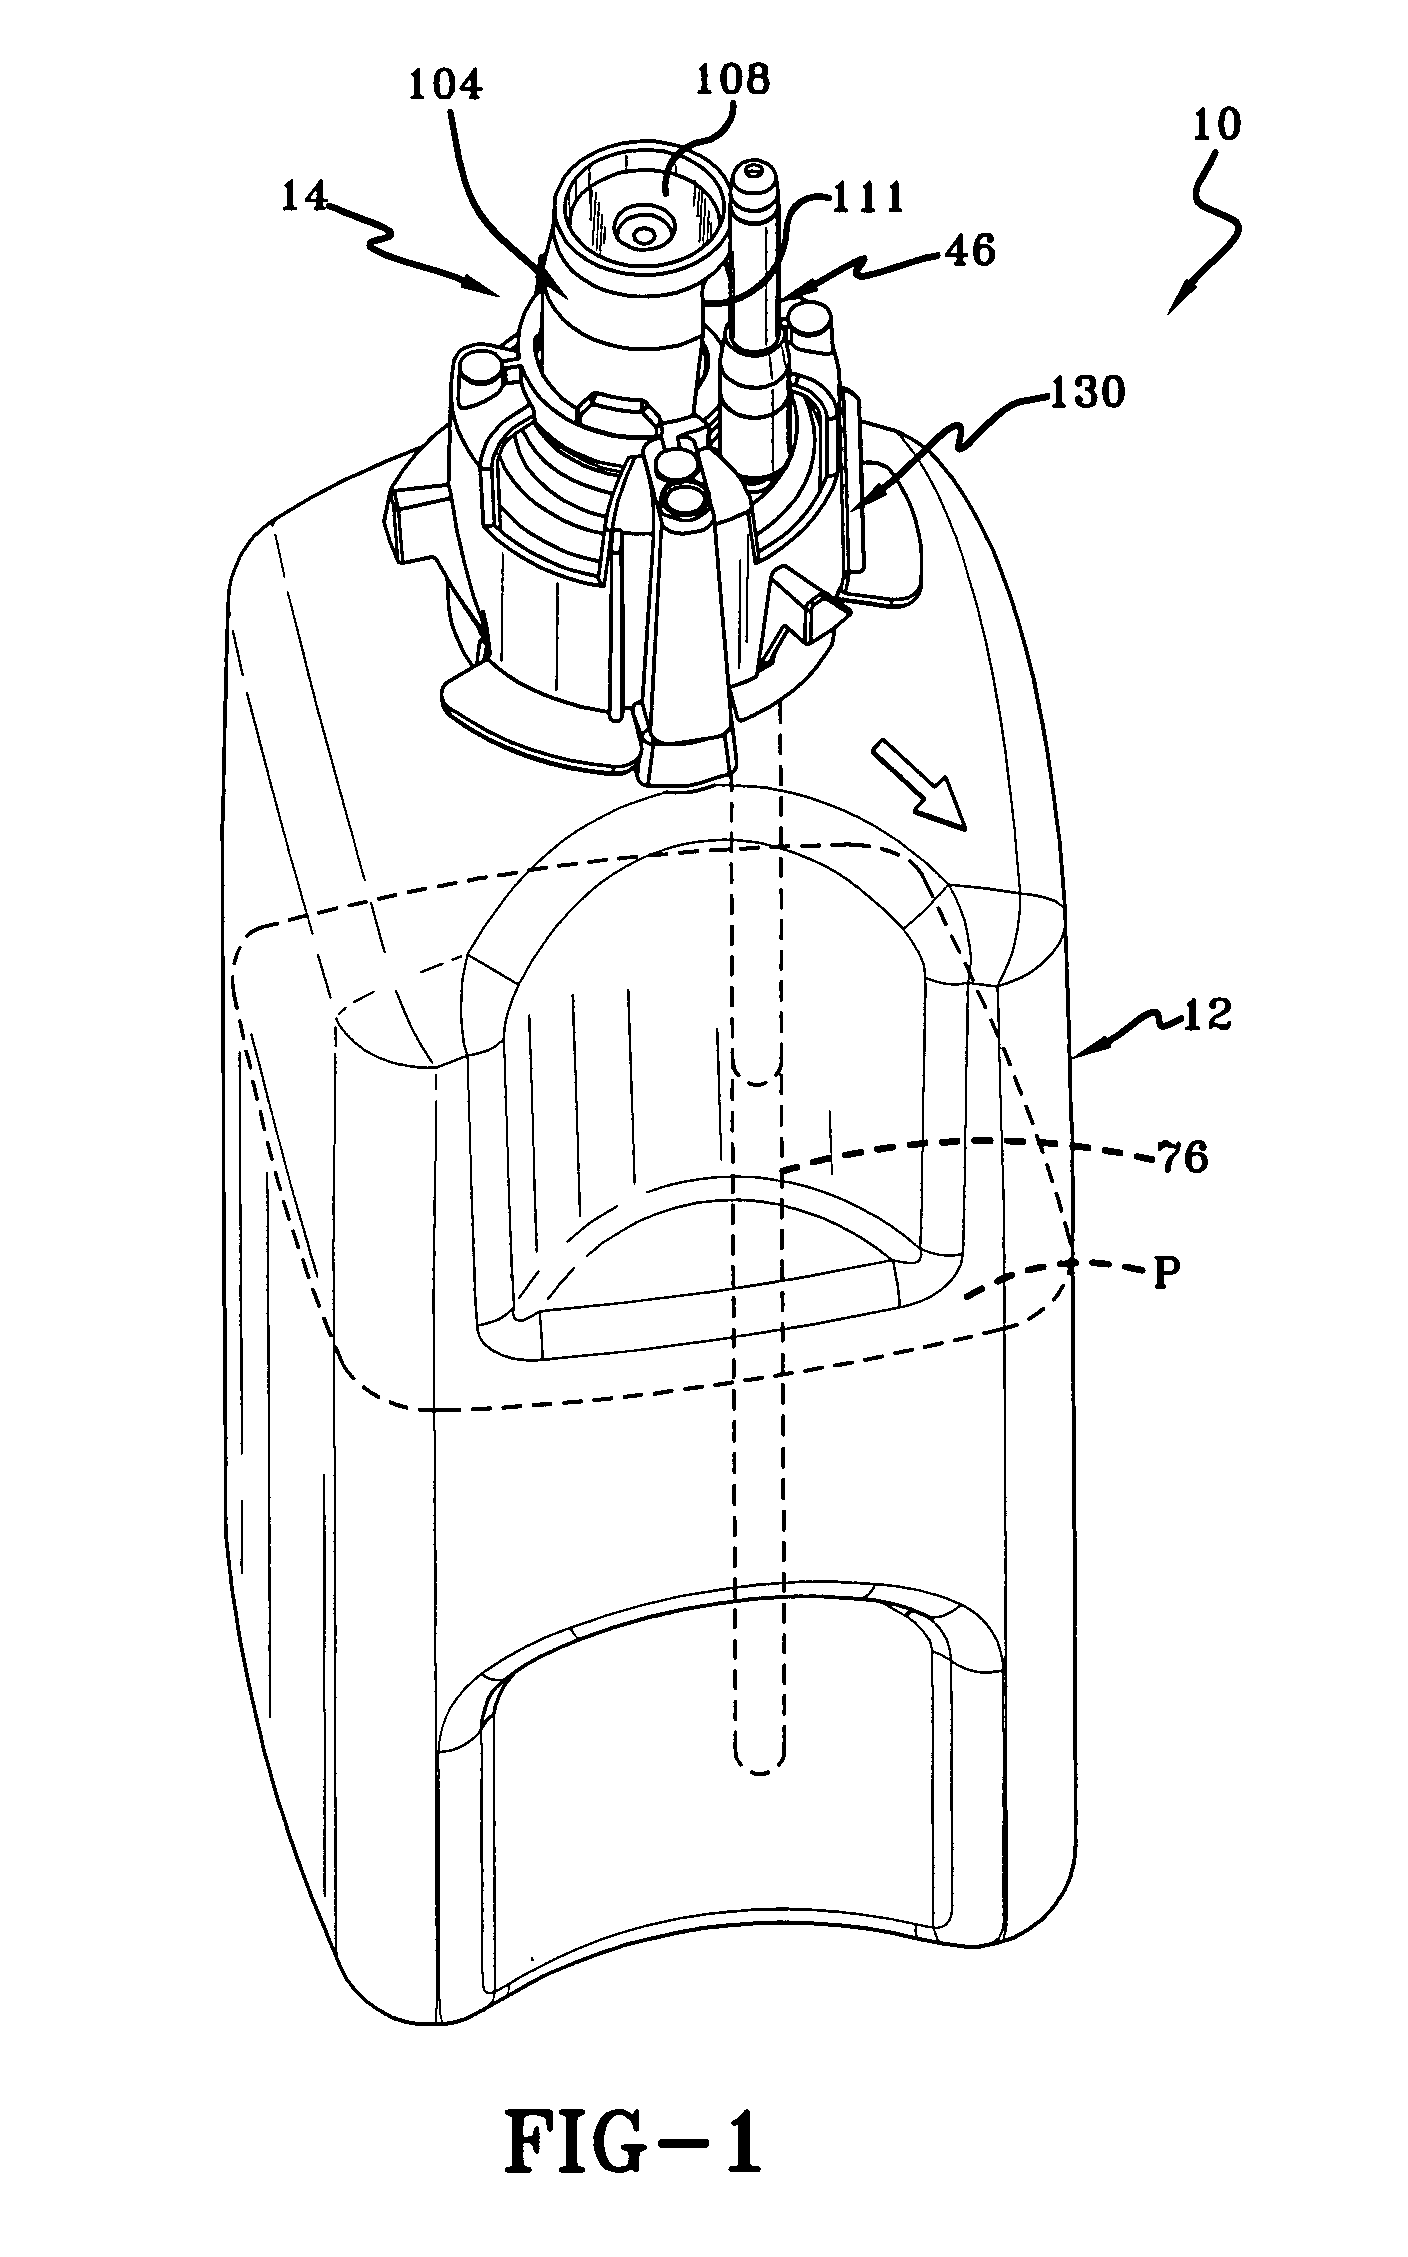 Foam soap dispenser with stationary dispensing tube